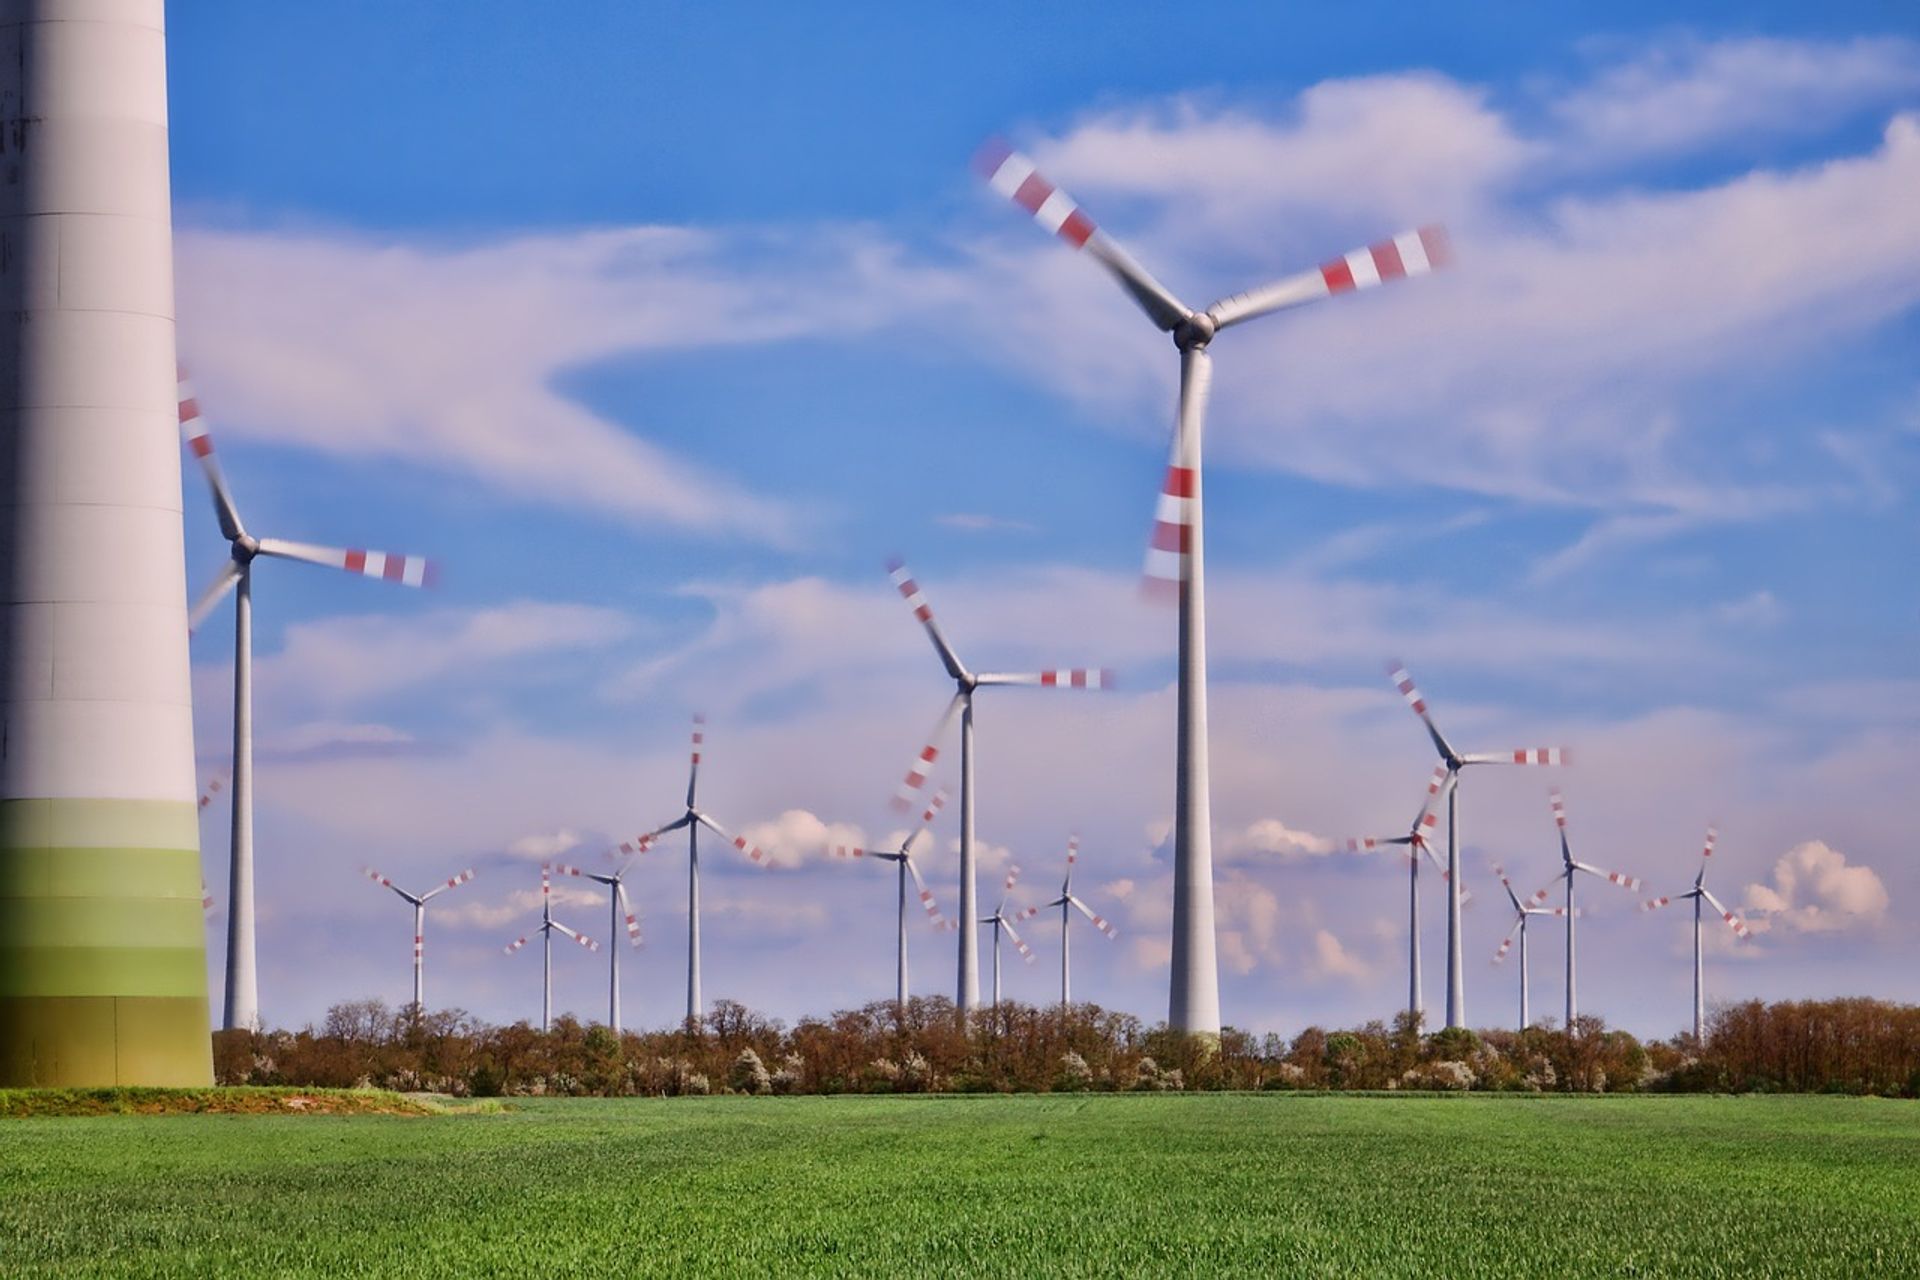 Grupa ORLEN sfinalizowała zakup farm wiatrowych Ujazd, Dobrzyca oraz Dominowo, o łącznej mocy ponad 140 MW